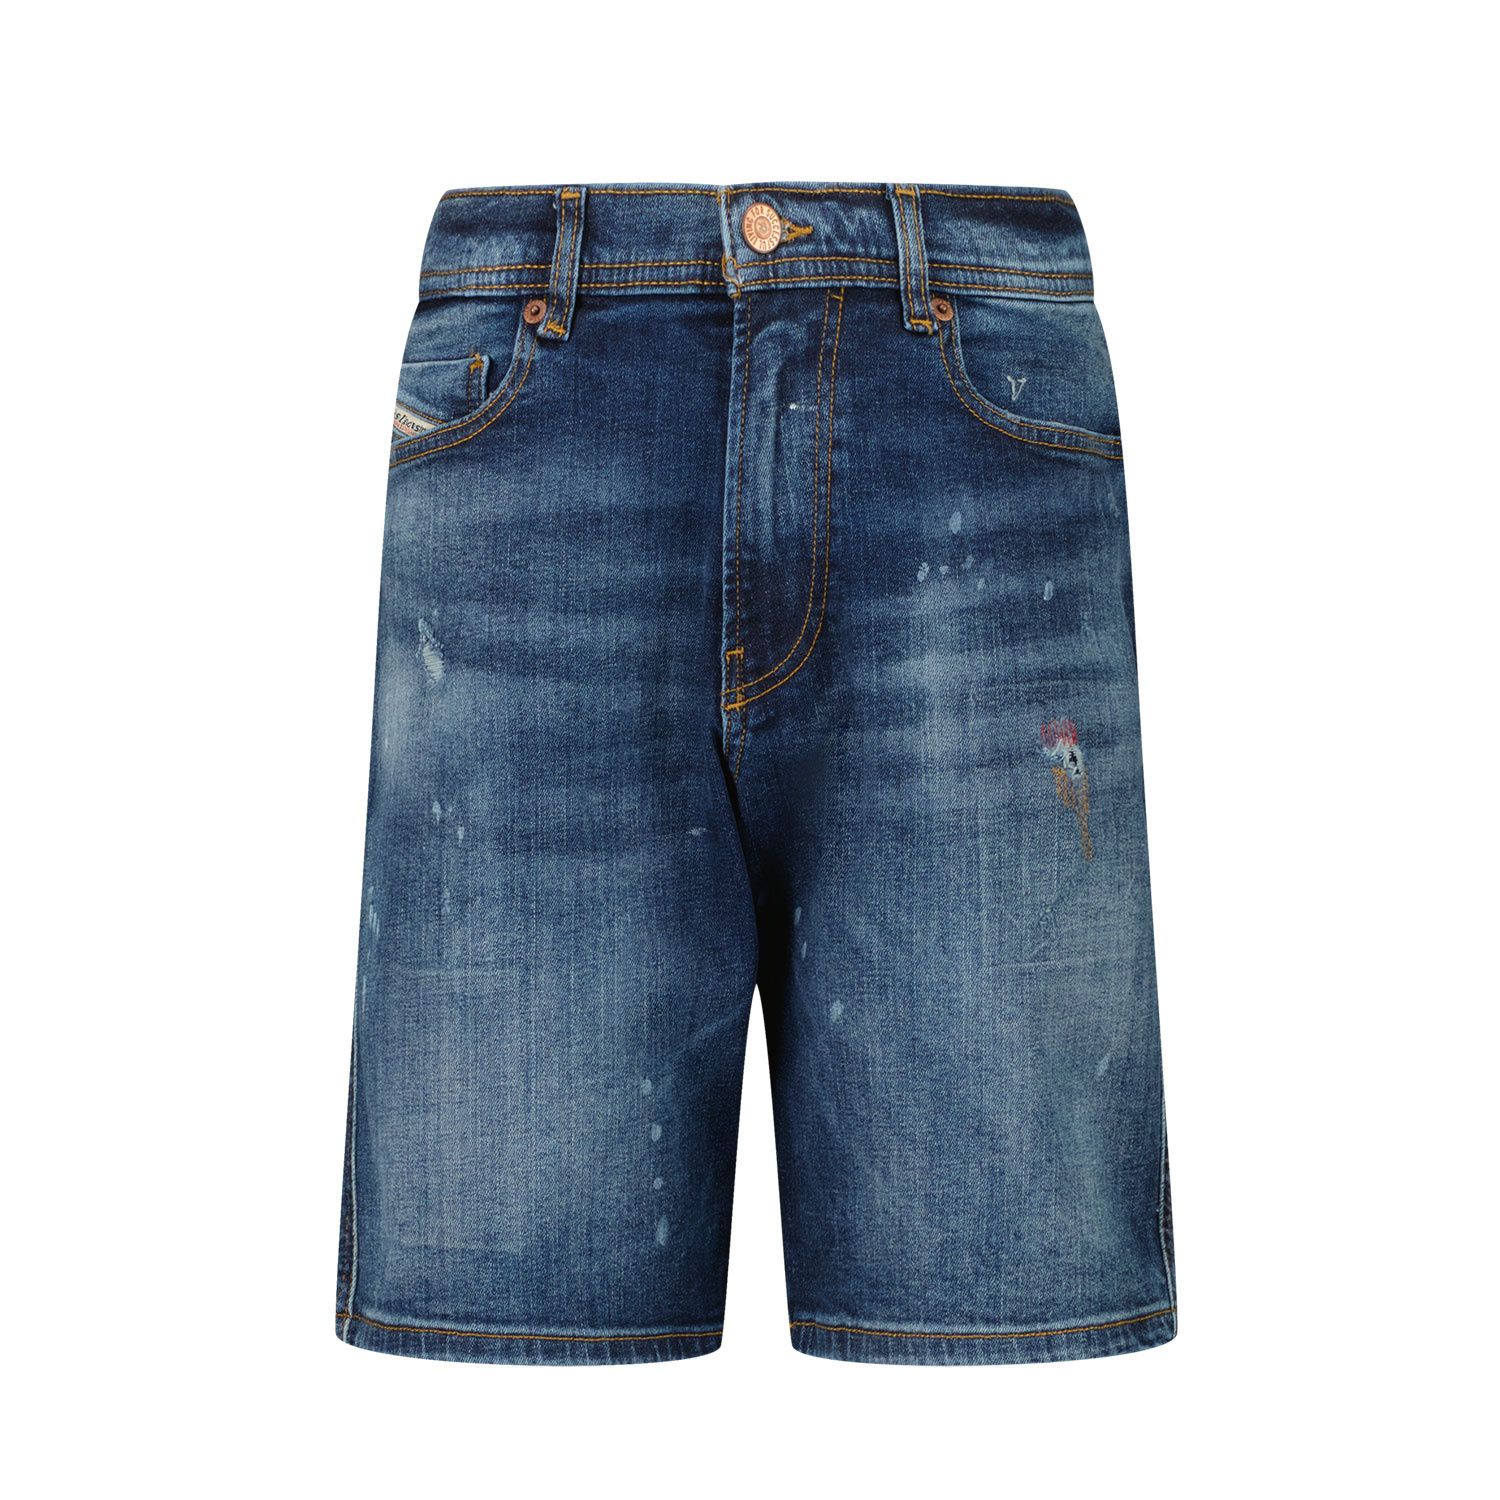 Afbeelding van Diesel J00151 kinder shorts jeans